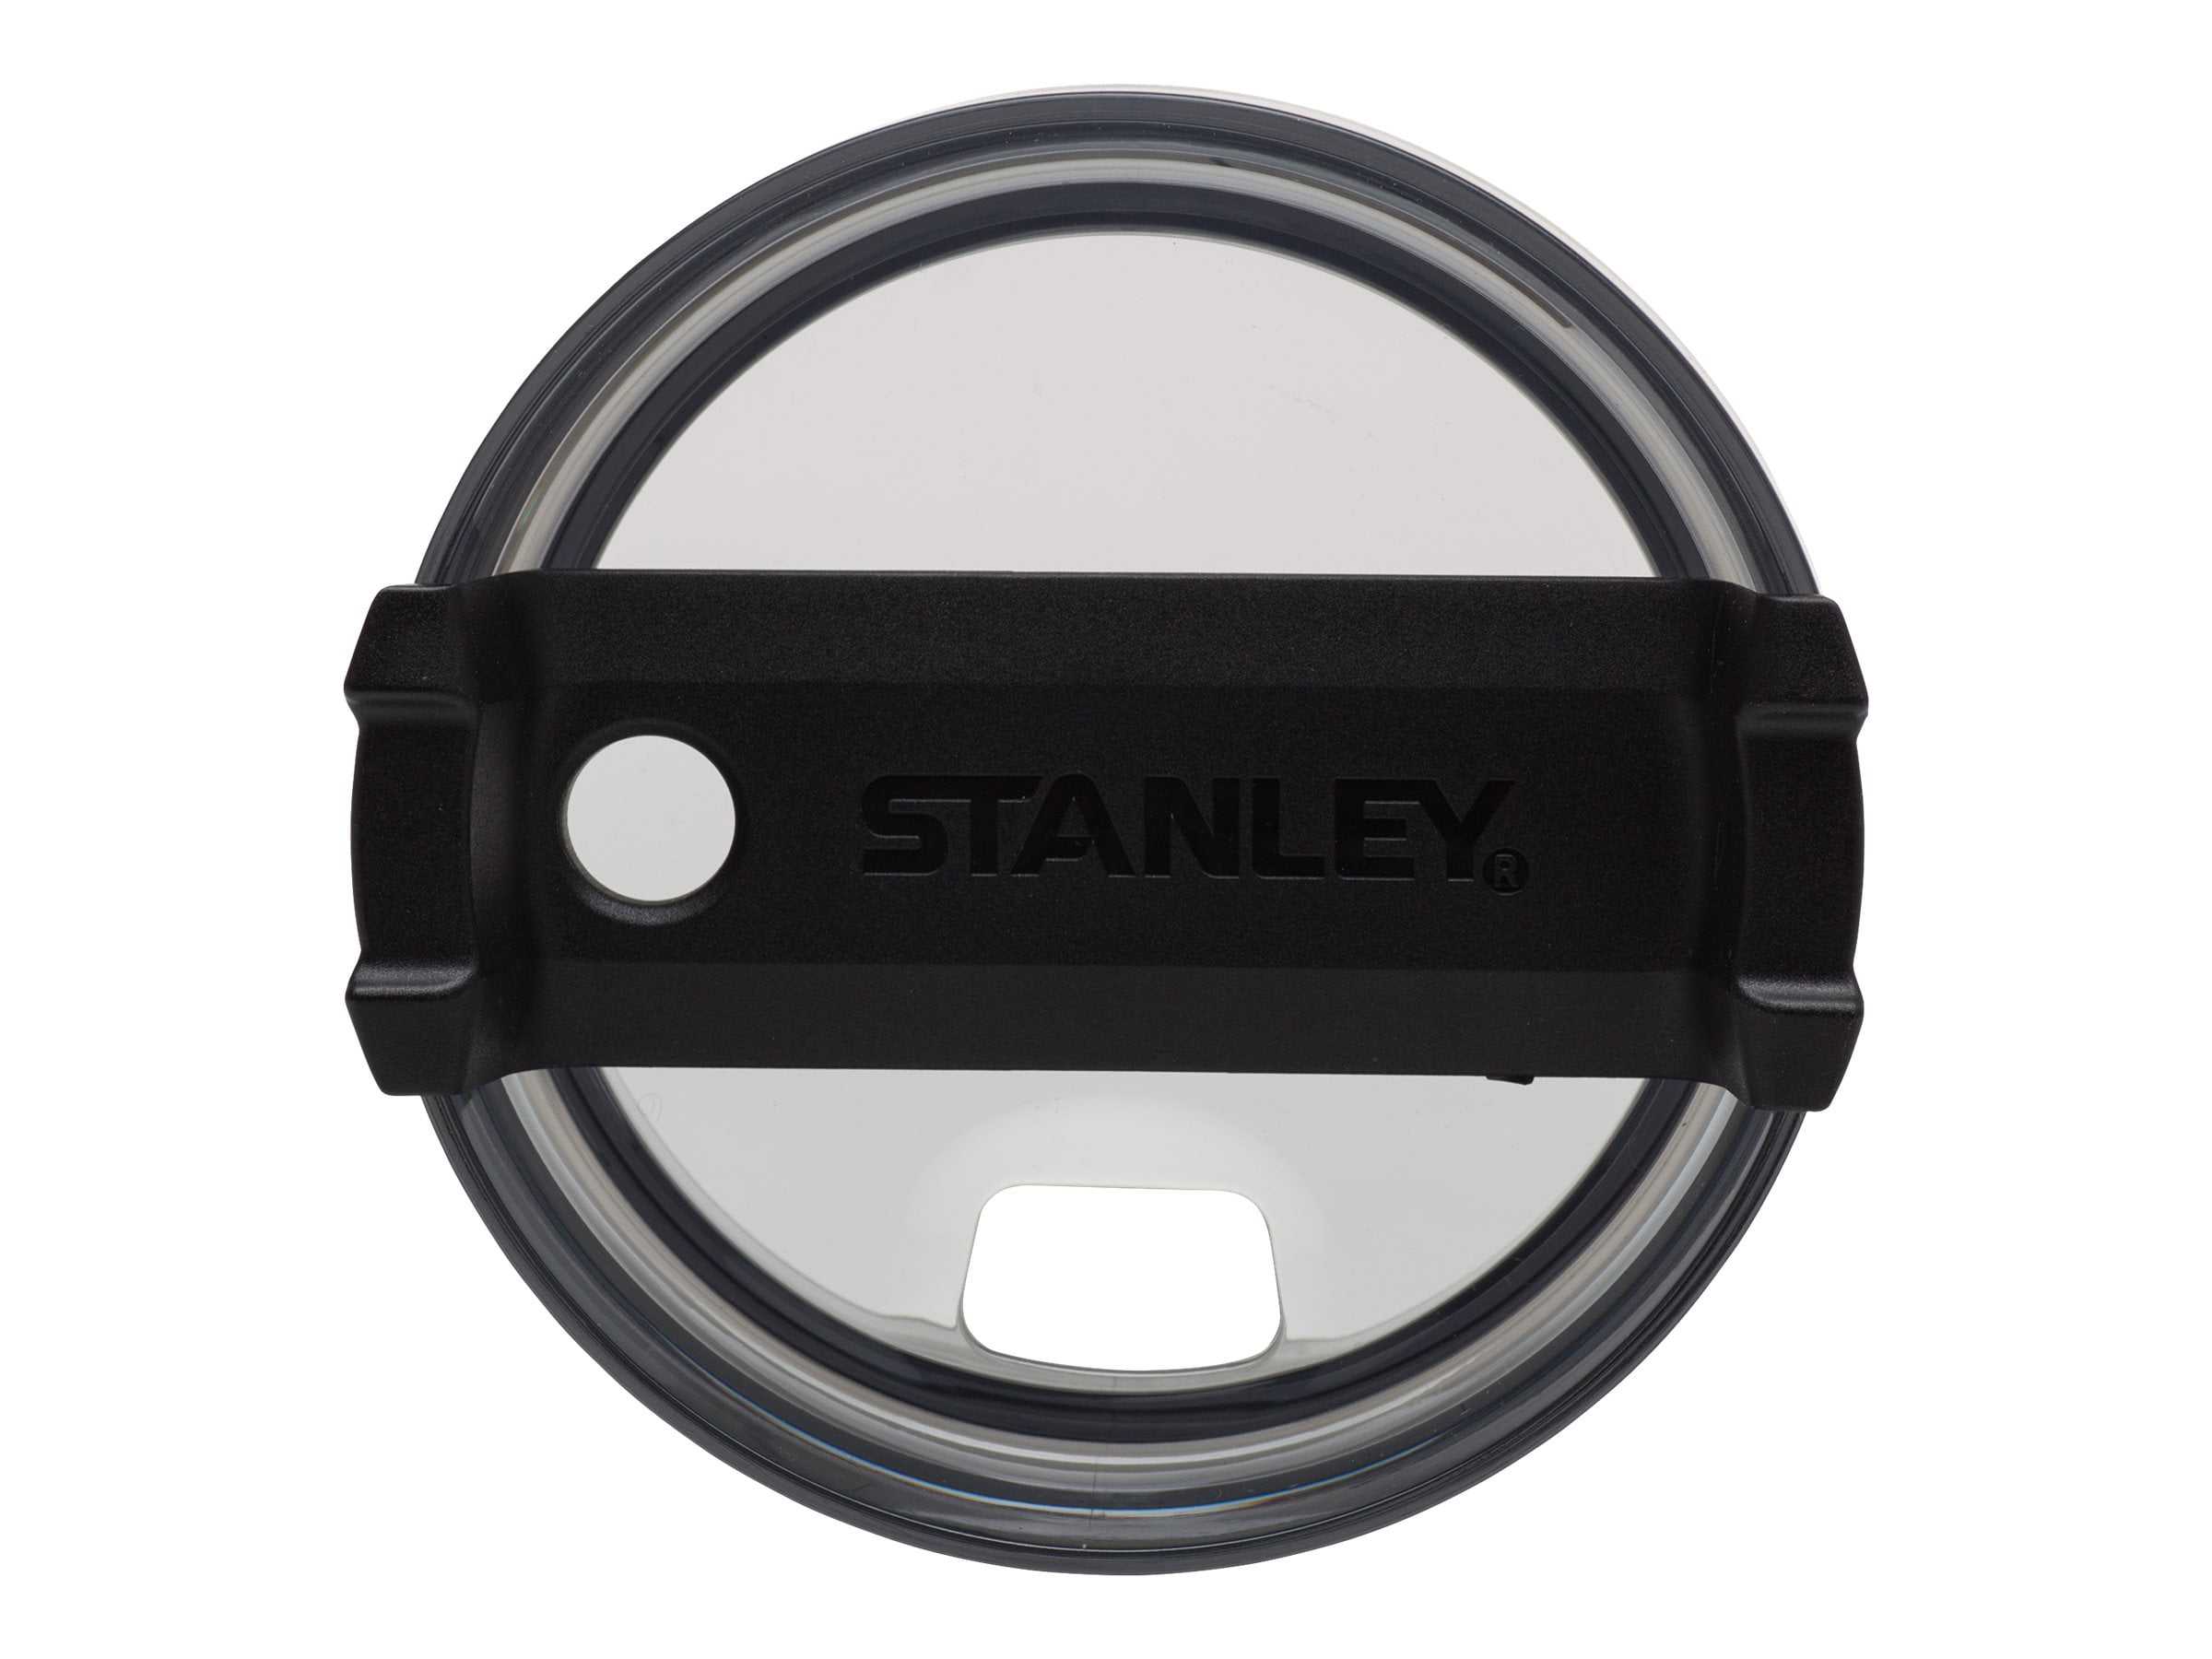 Stanley 10-02664-002 Adventure 40-Ounce Vacuum Quencher, Matte Black 